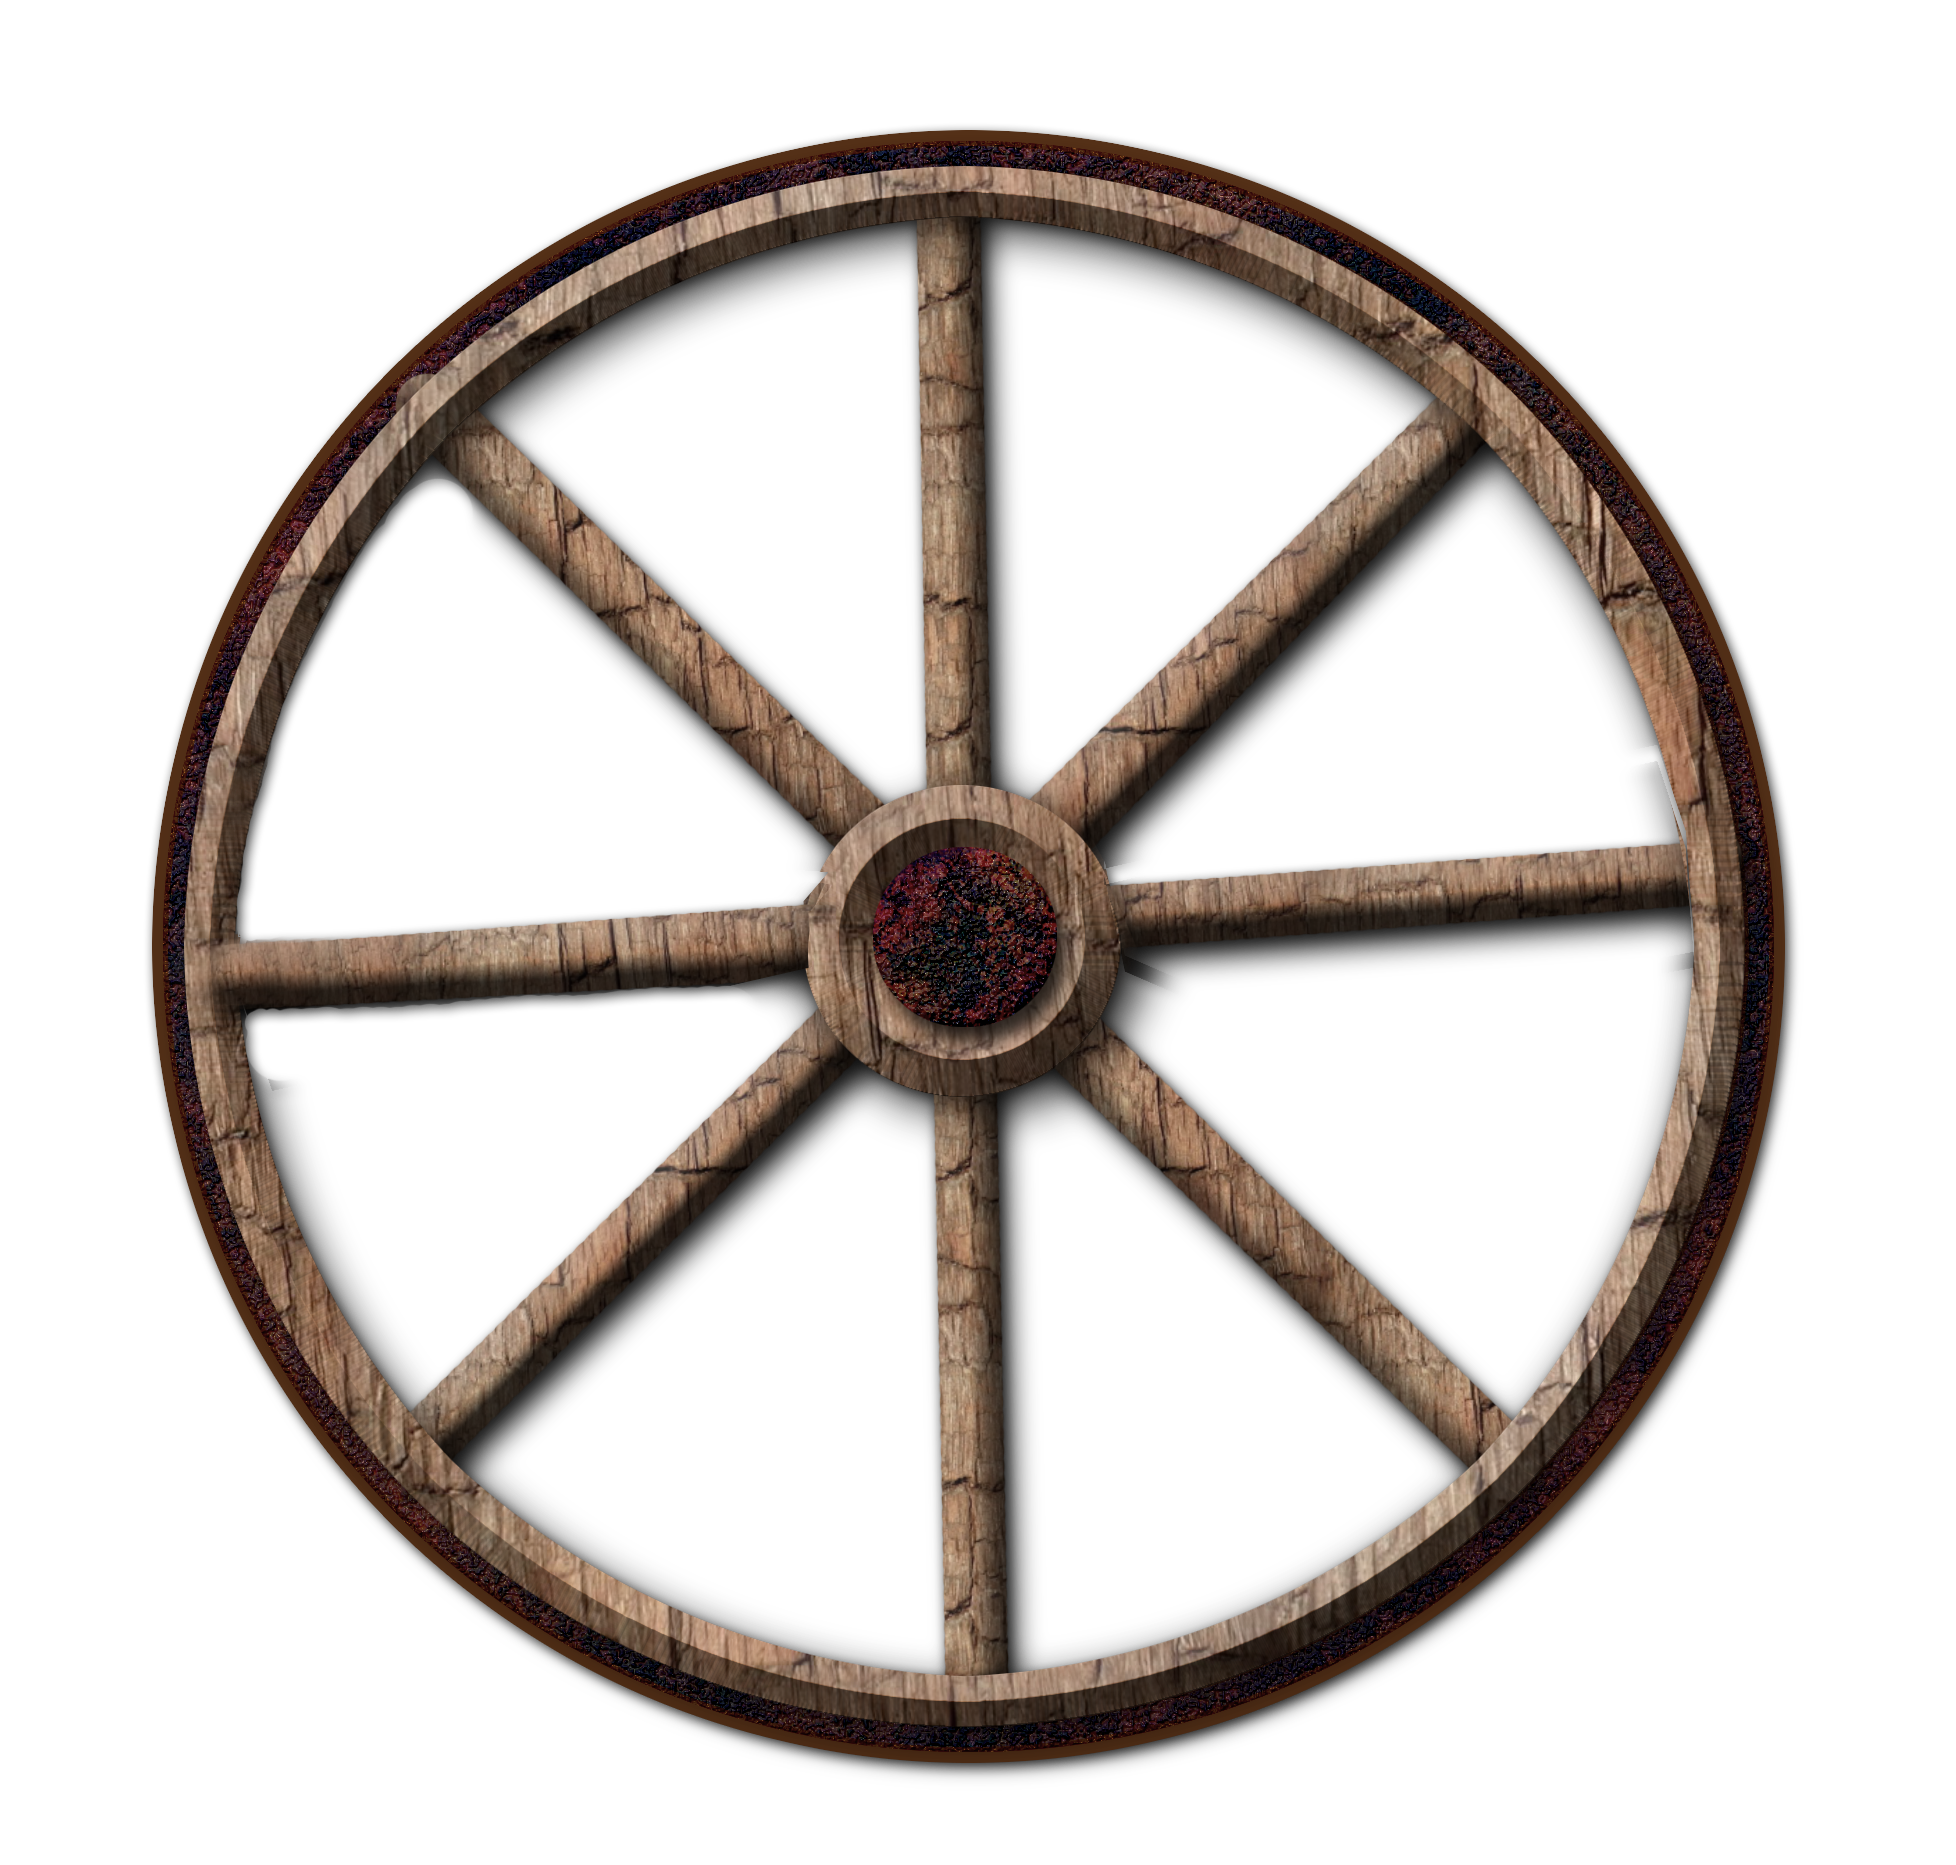 wagon wheel: vector old Woode